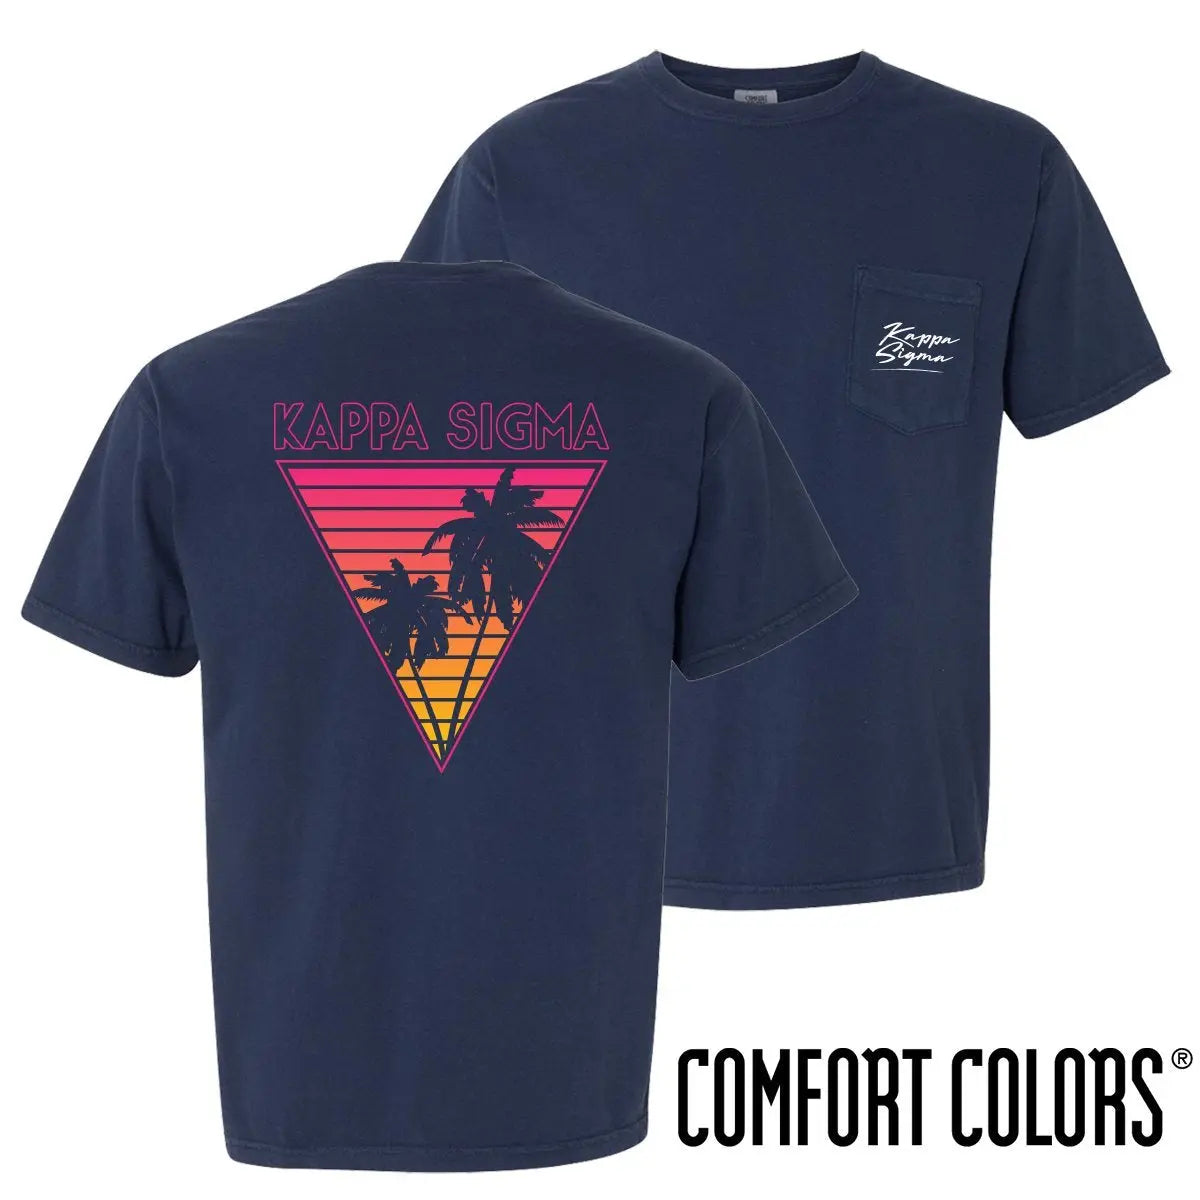 Kappa Sig Comfort Colors Navy Short Sleeve Miami Pocket Tee - Kappa Sigma Official Store